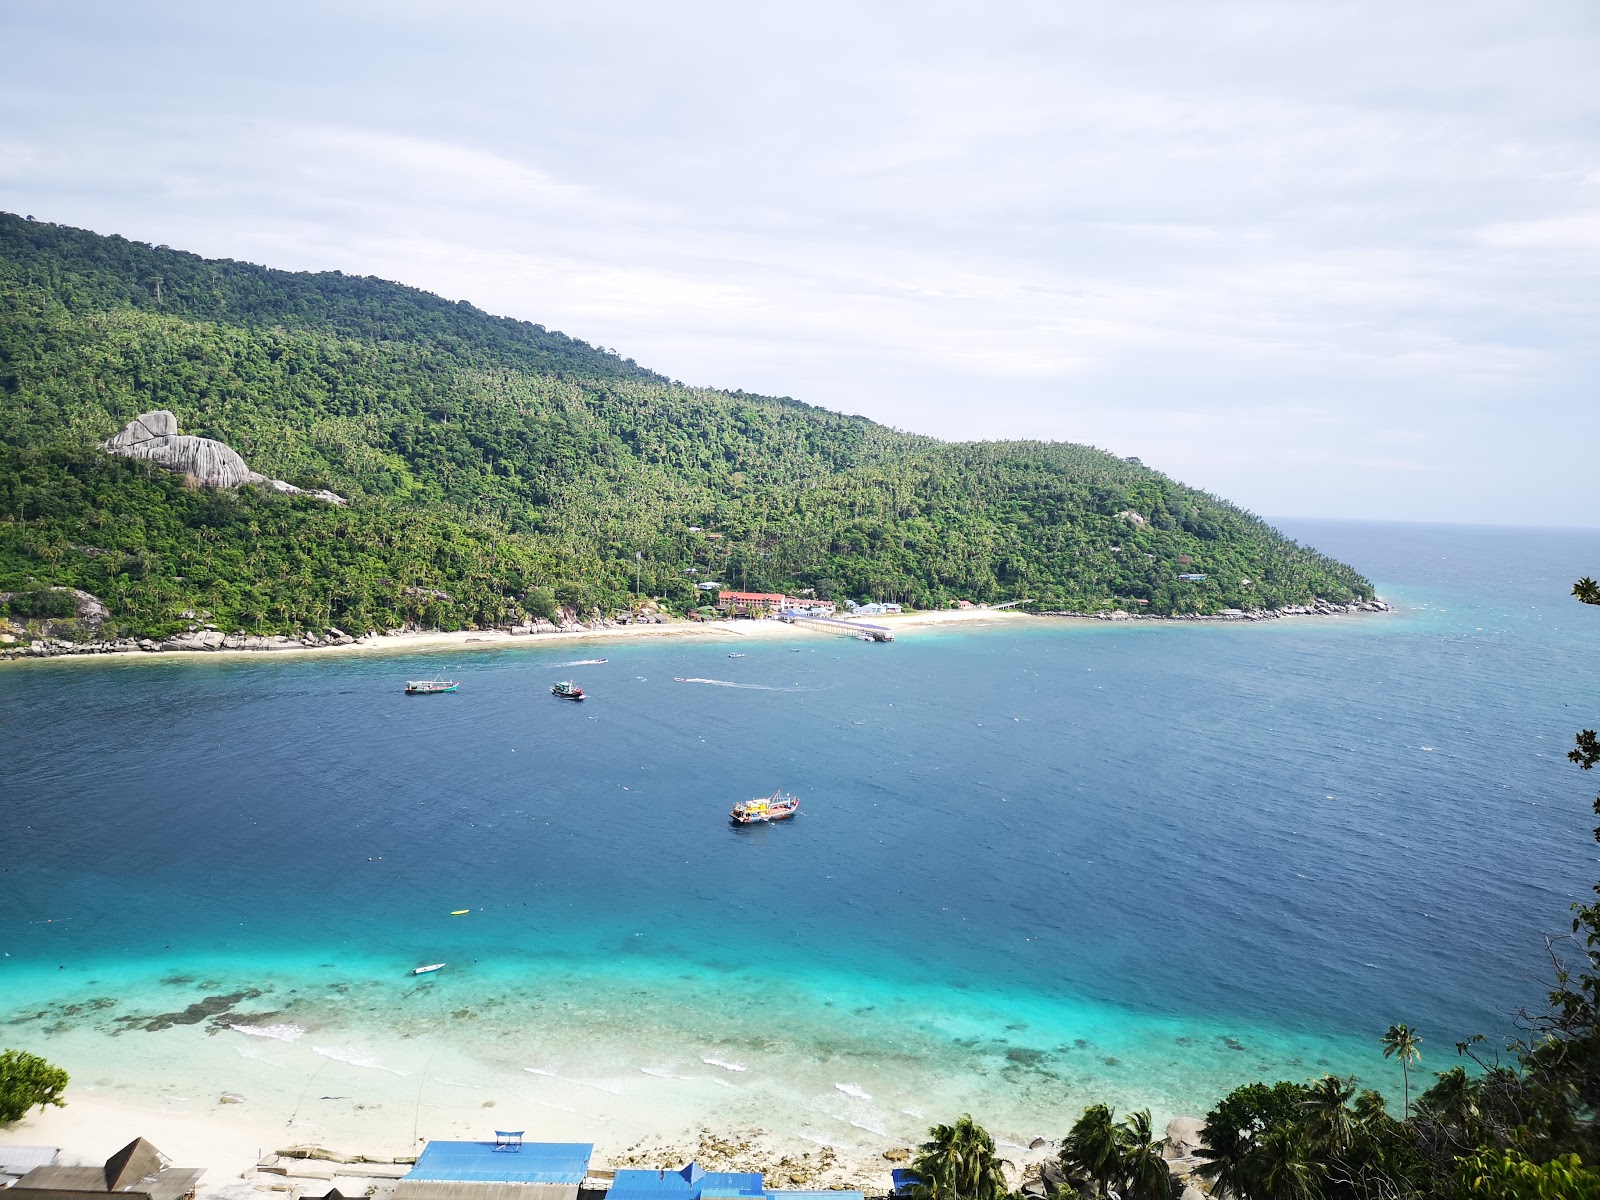 Sebukang Bay Resort'in fotoğrafı turkuaz saf su yüzey ile